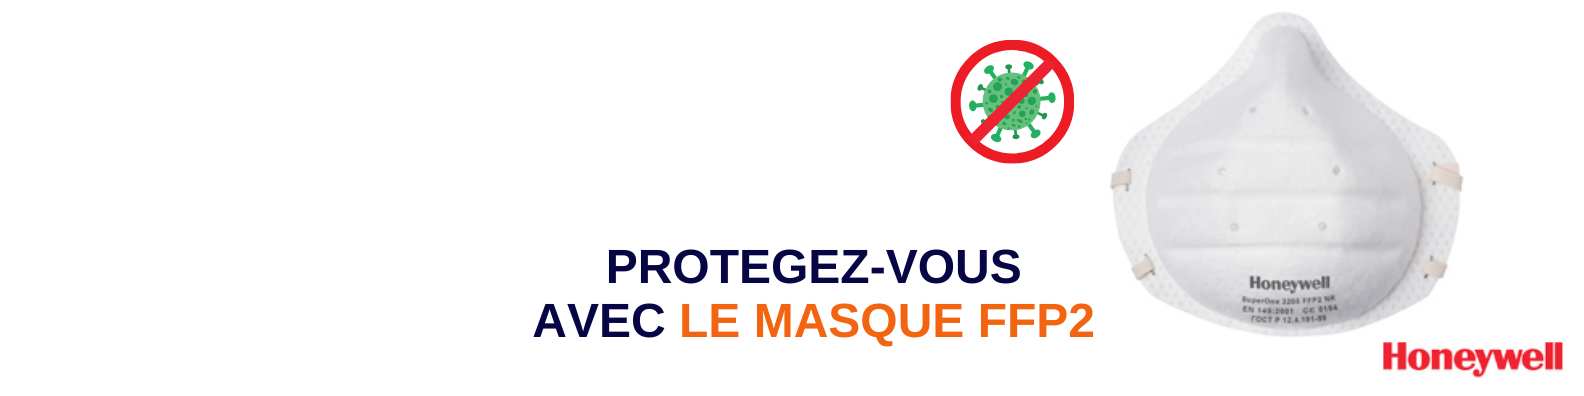 Masque protection anti-virus FFP2